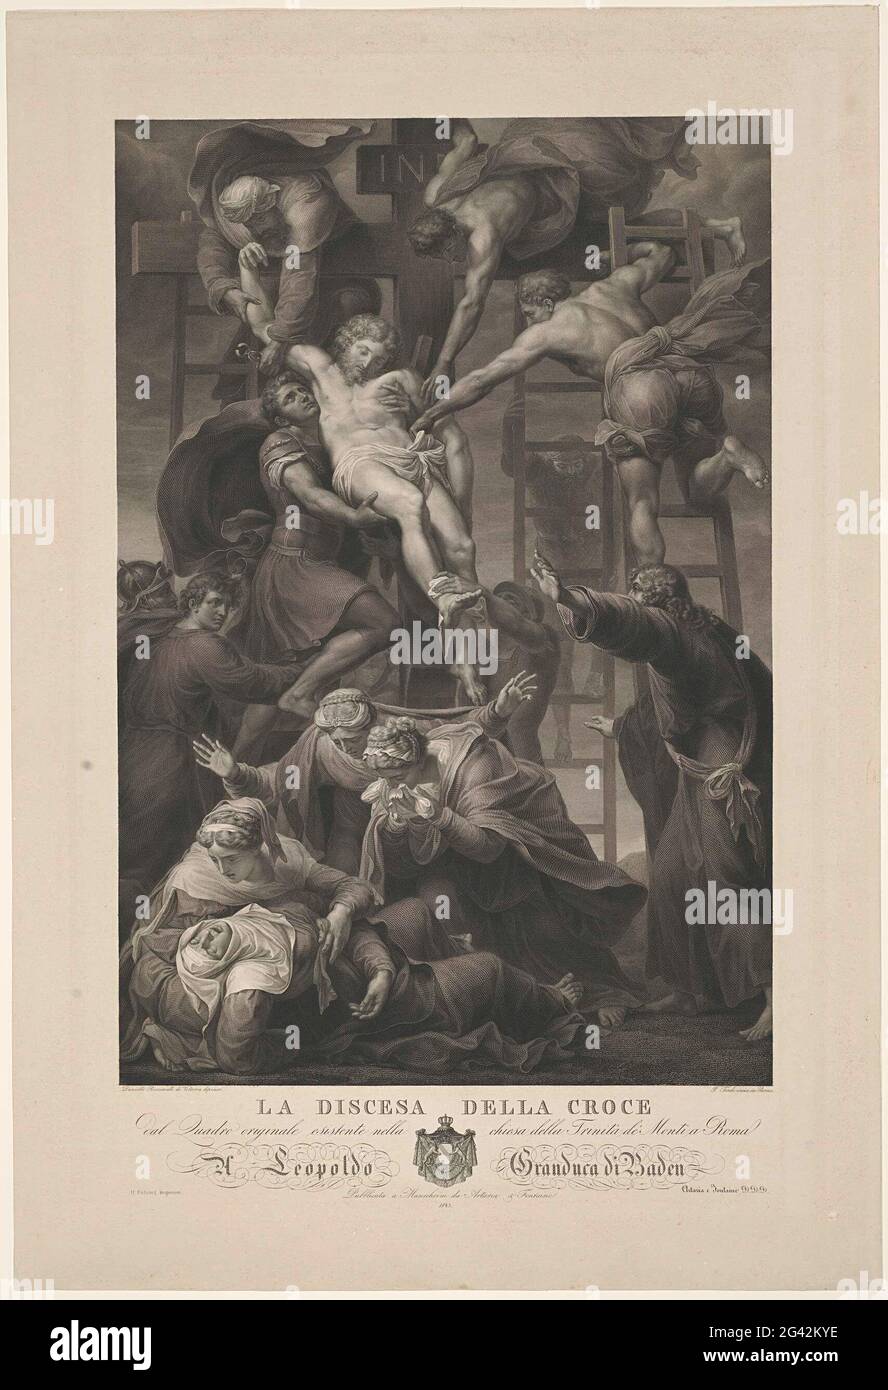 Die Kreuzung; La Discesa della Croce. Der Leib Christi wird von einer Gruppe von Menschen auf Leitern vom Kreuz genommen. Die Maria trauert am Fuße des Kreuzes. Titel, Auftrag und Waffe im Untermarsch. Stockfoto